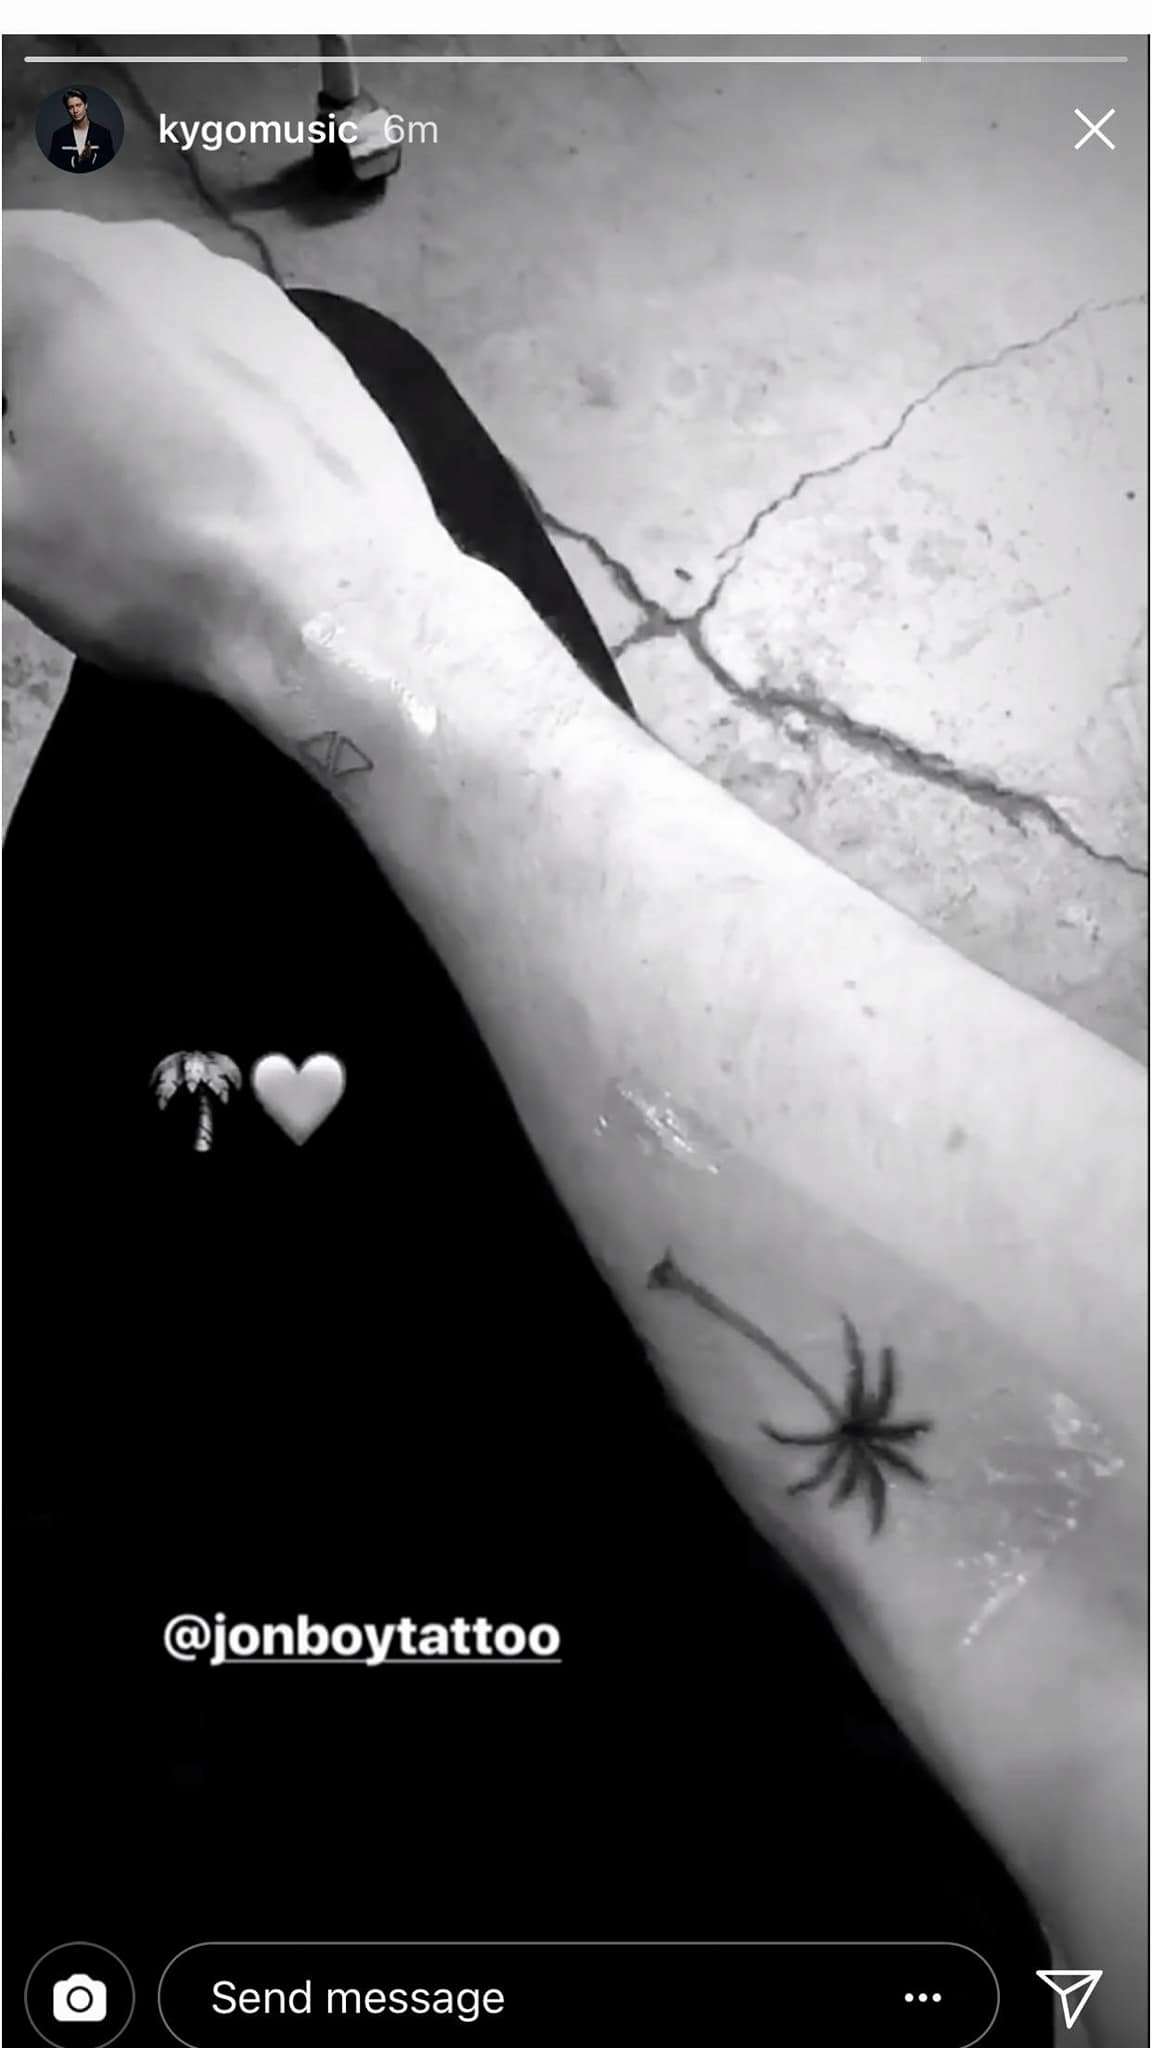 kygo - avicii tattoo